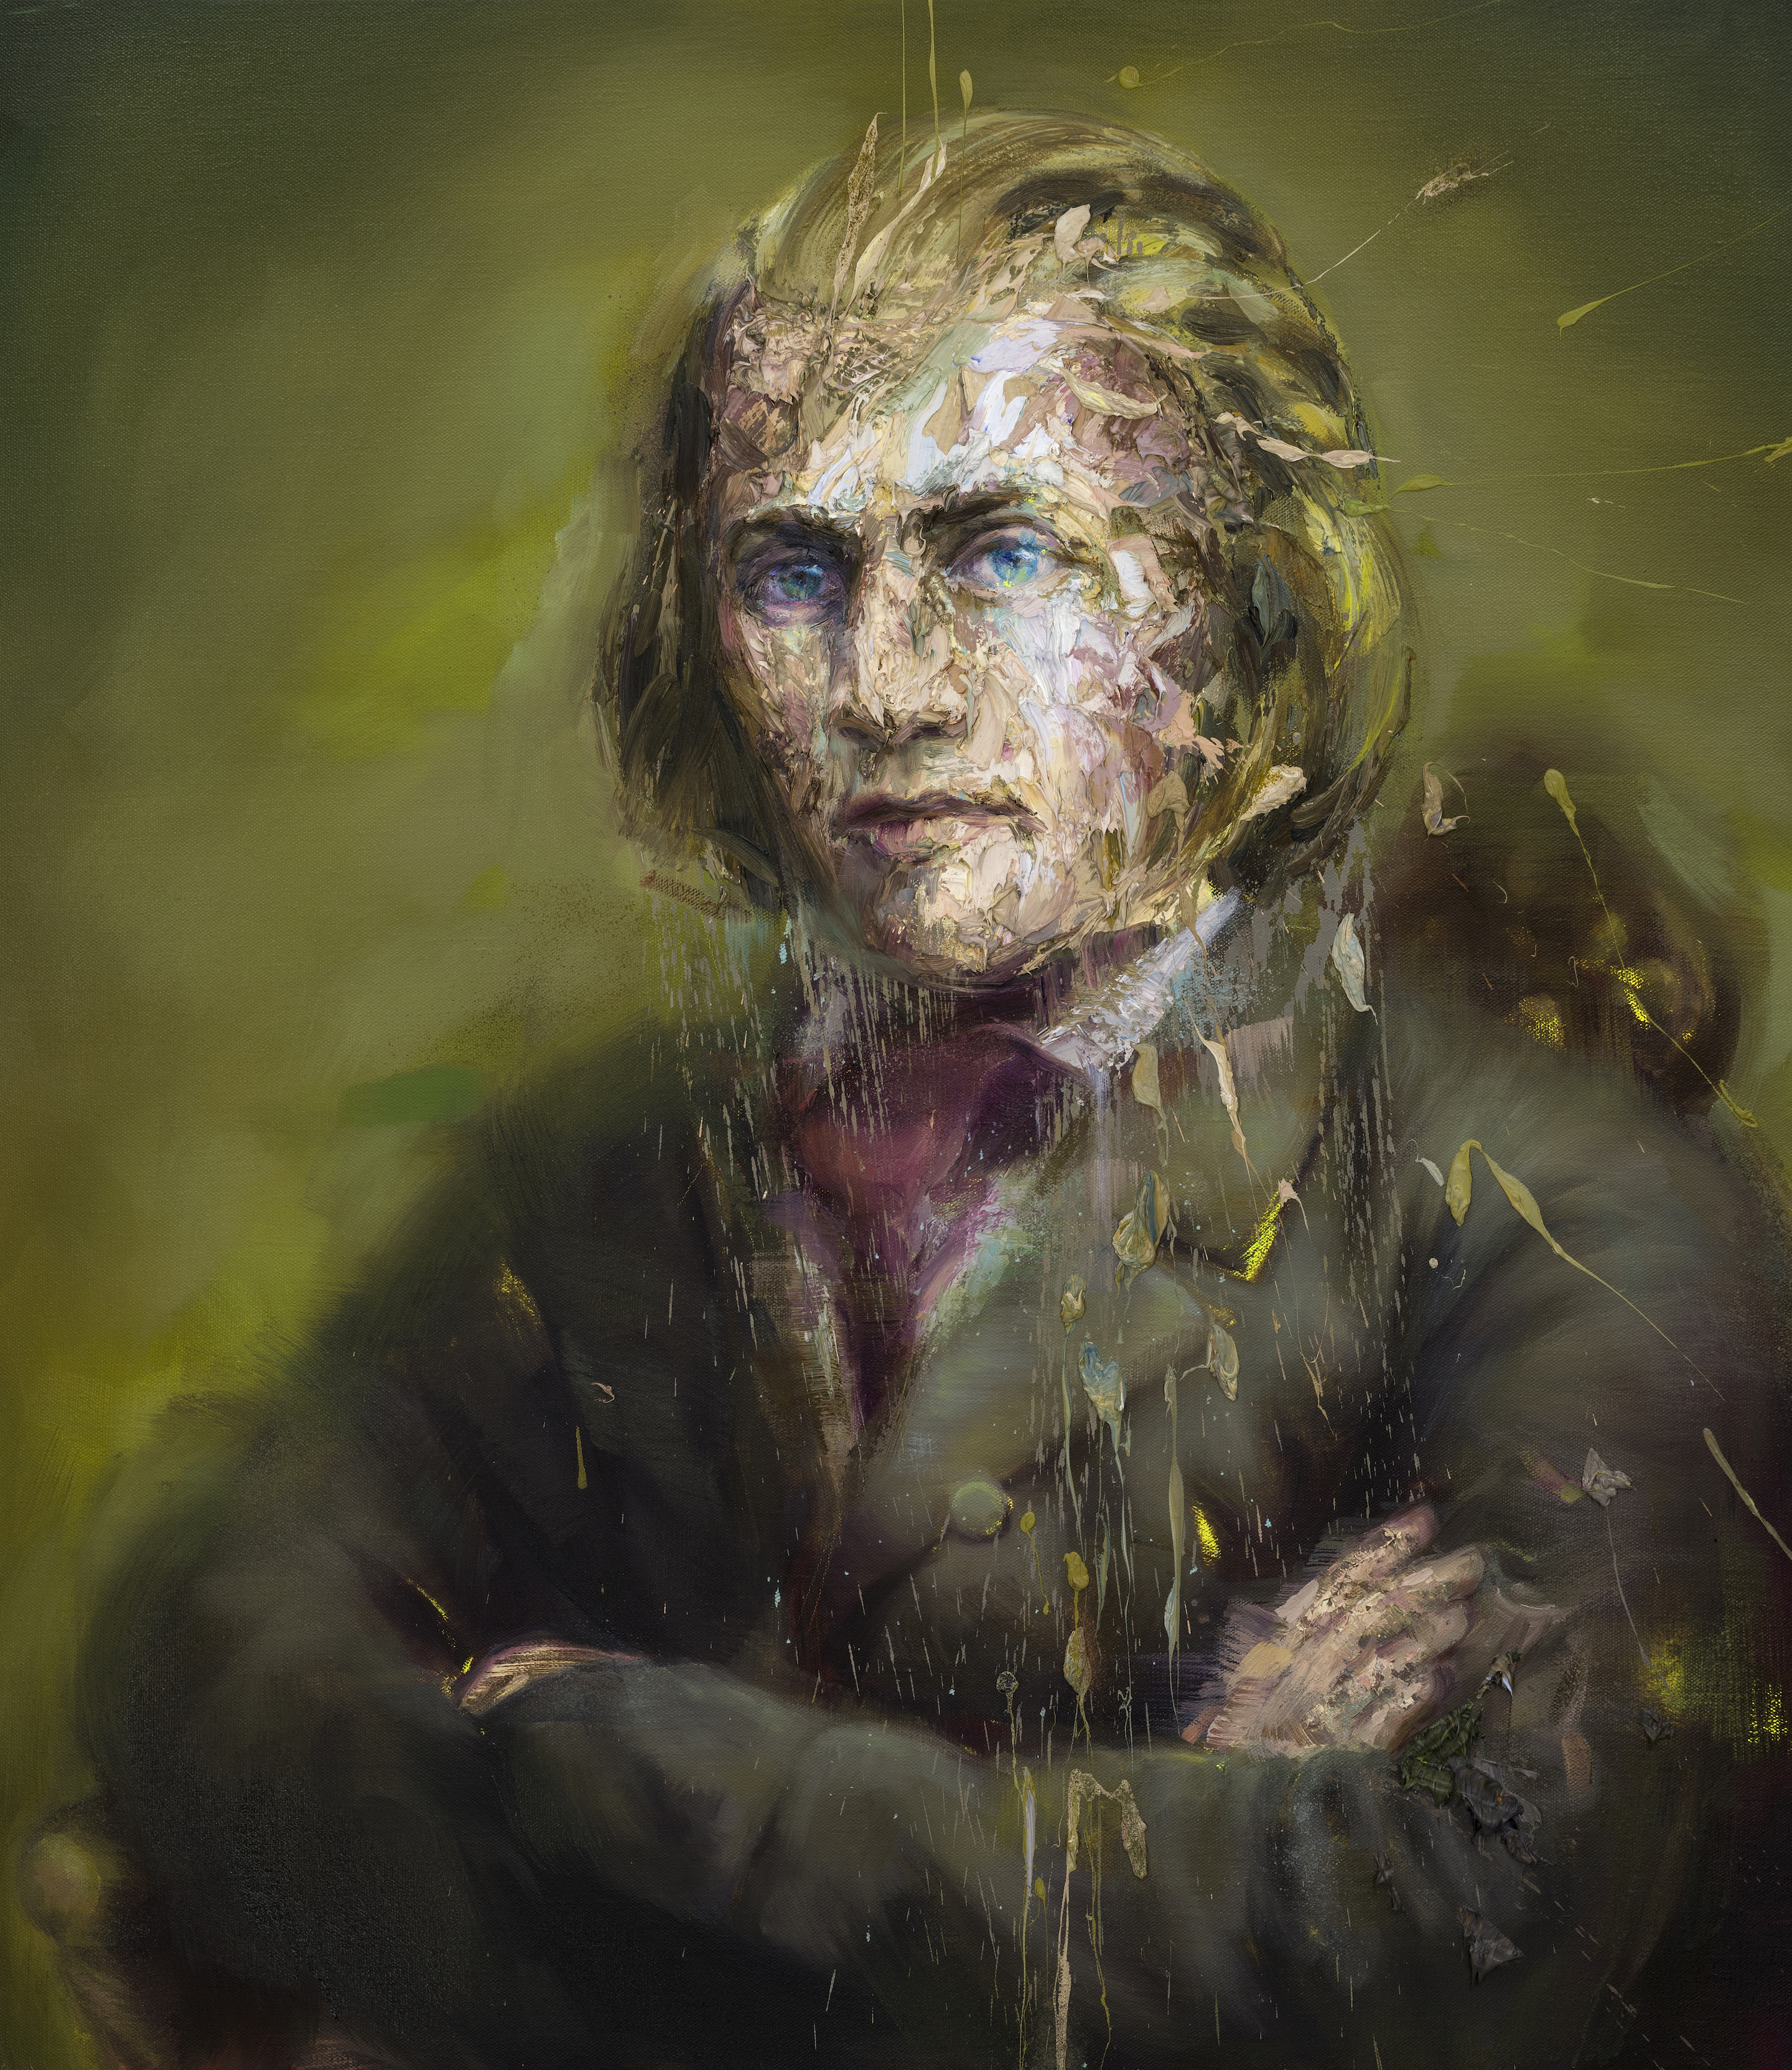 A portrait titled Johannes Brahms by Artist Mathieu Laca